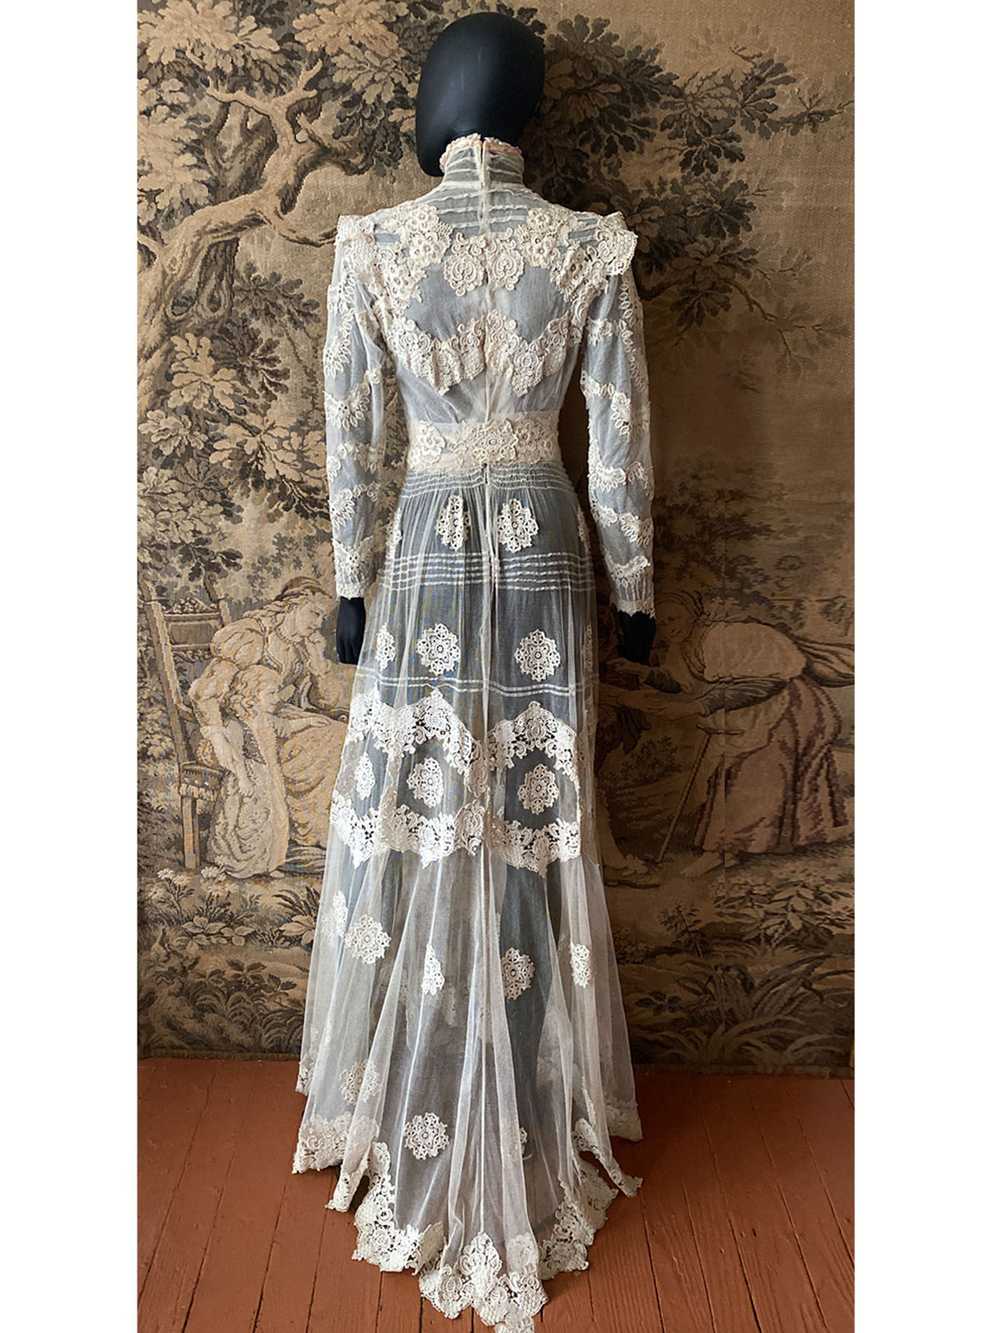 Antique Edwardian Circa 1912 Lace & Net Gown - image 6